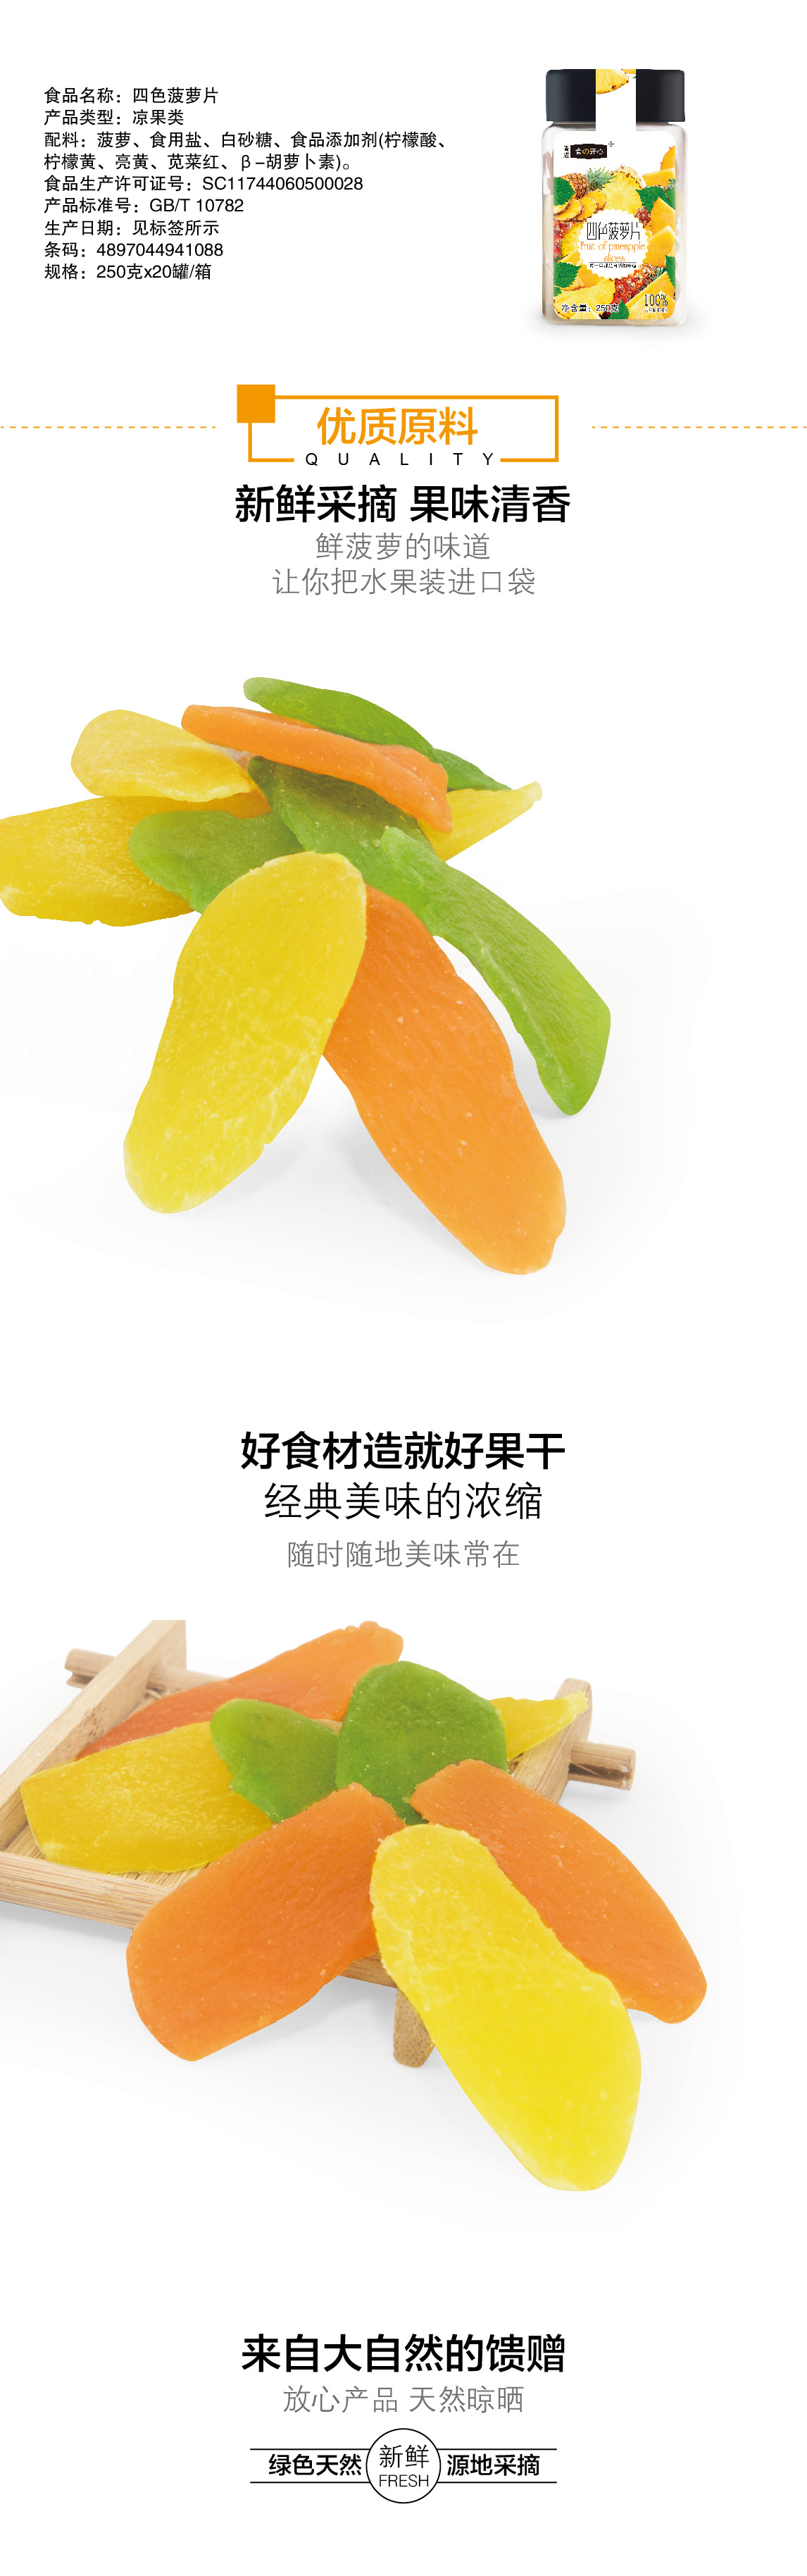 杂果菠萝片下拉-02 2.jpg